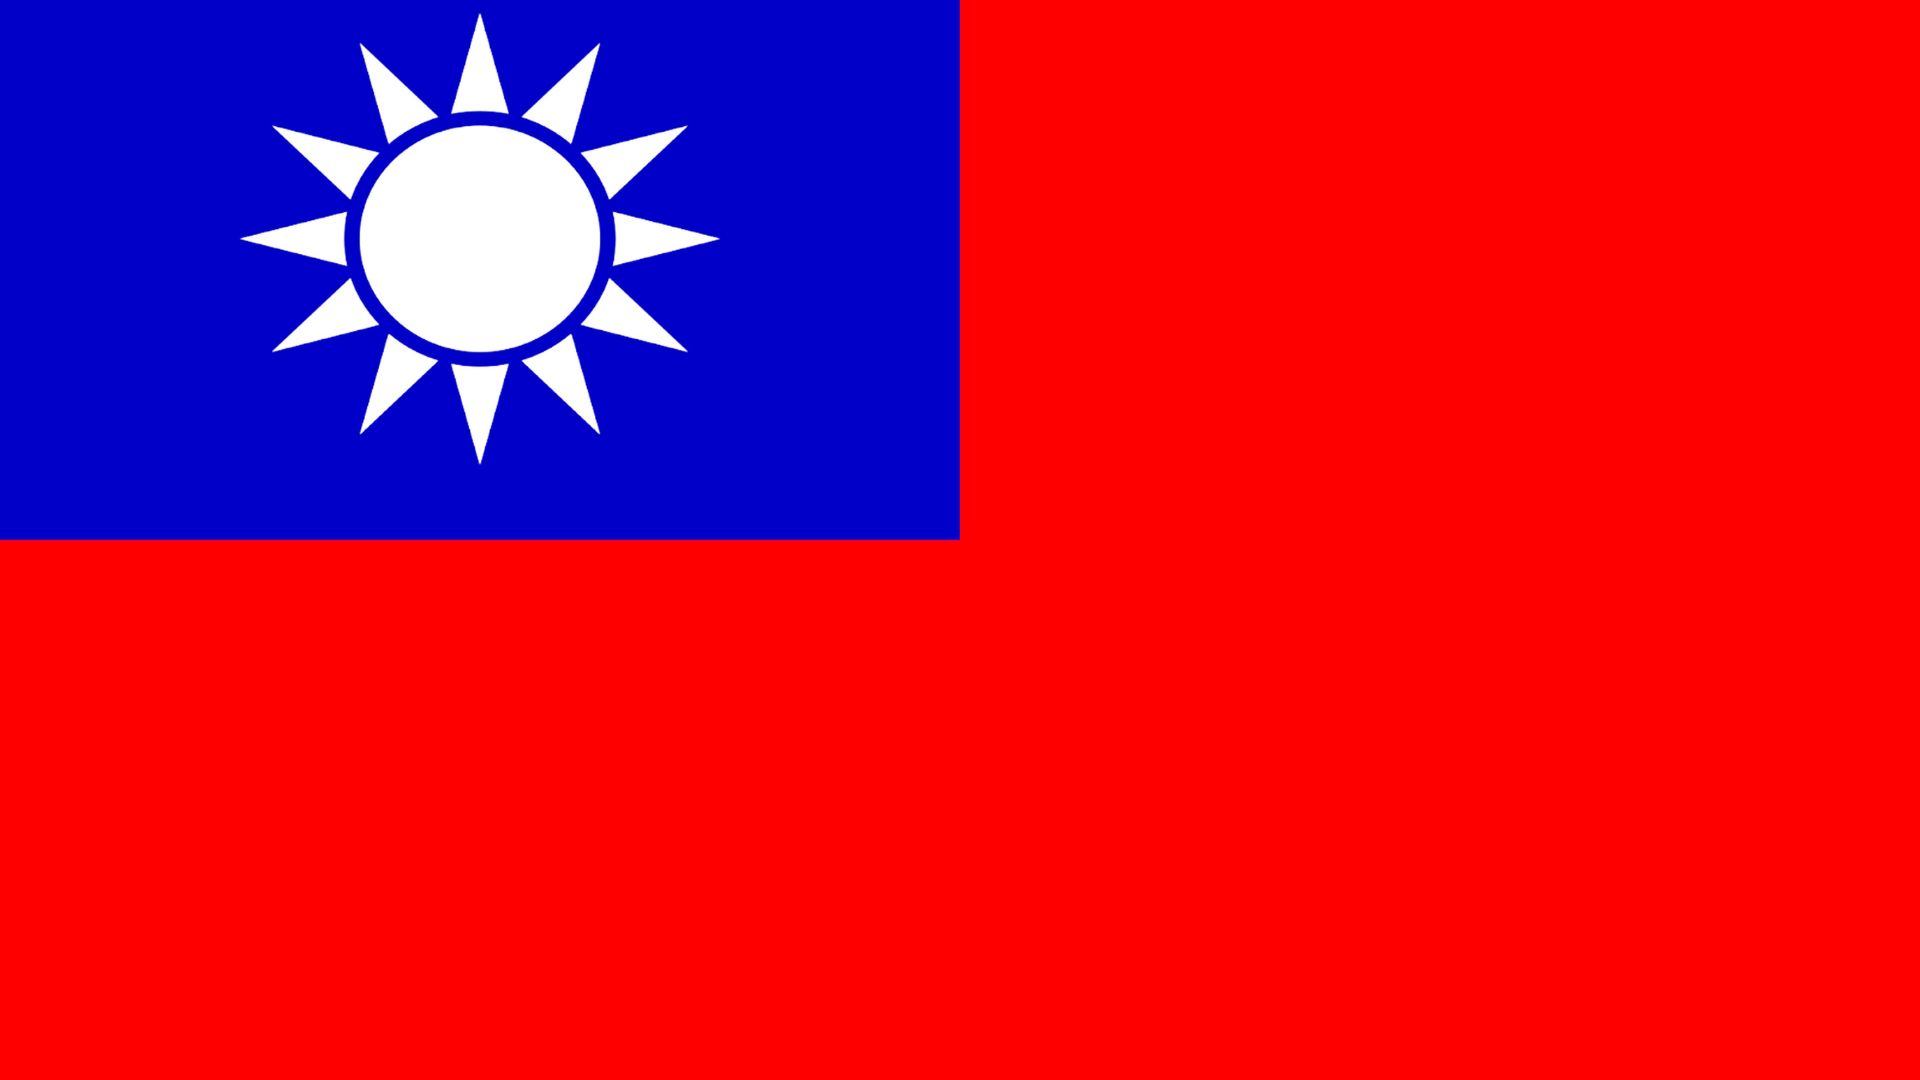 A bandeira do Taiwan  possui três cores: vermelho, azul e branco.